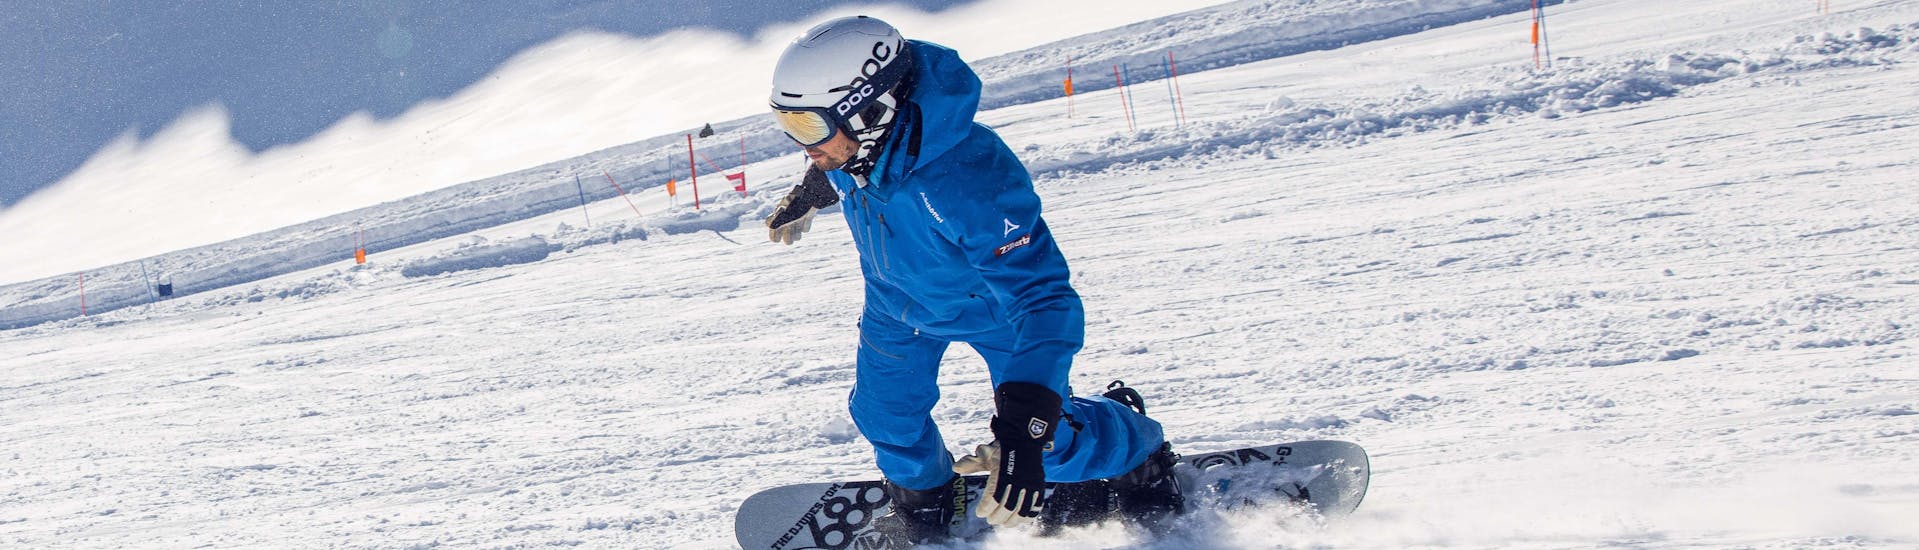 Cours particulier de snowboard dès 5 ans pour Tous niveaux avec Ski School Skipower Finkenberg.